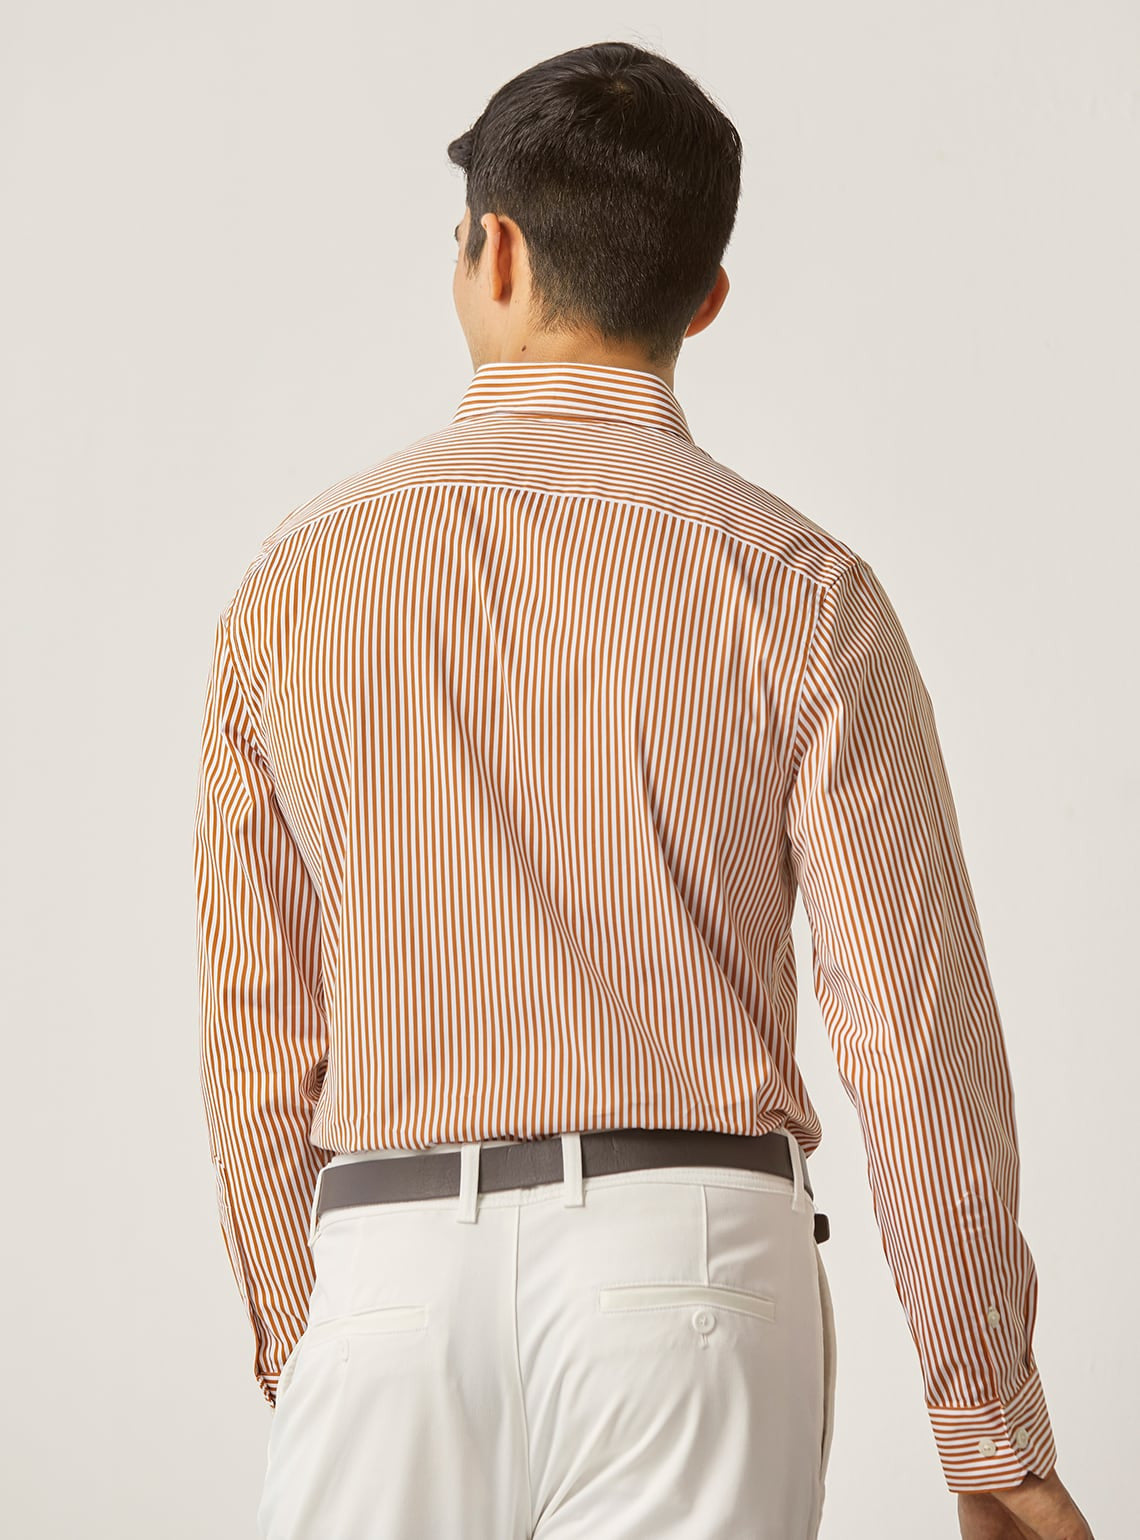 Tan Stripe Shirt